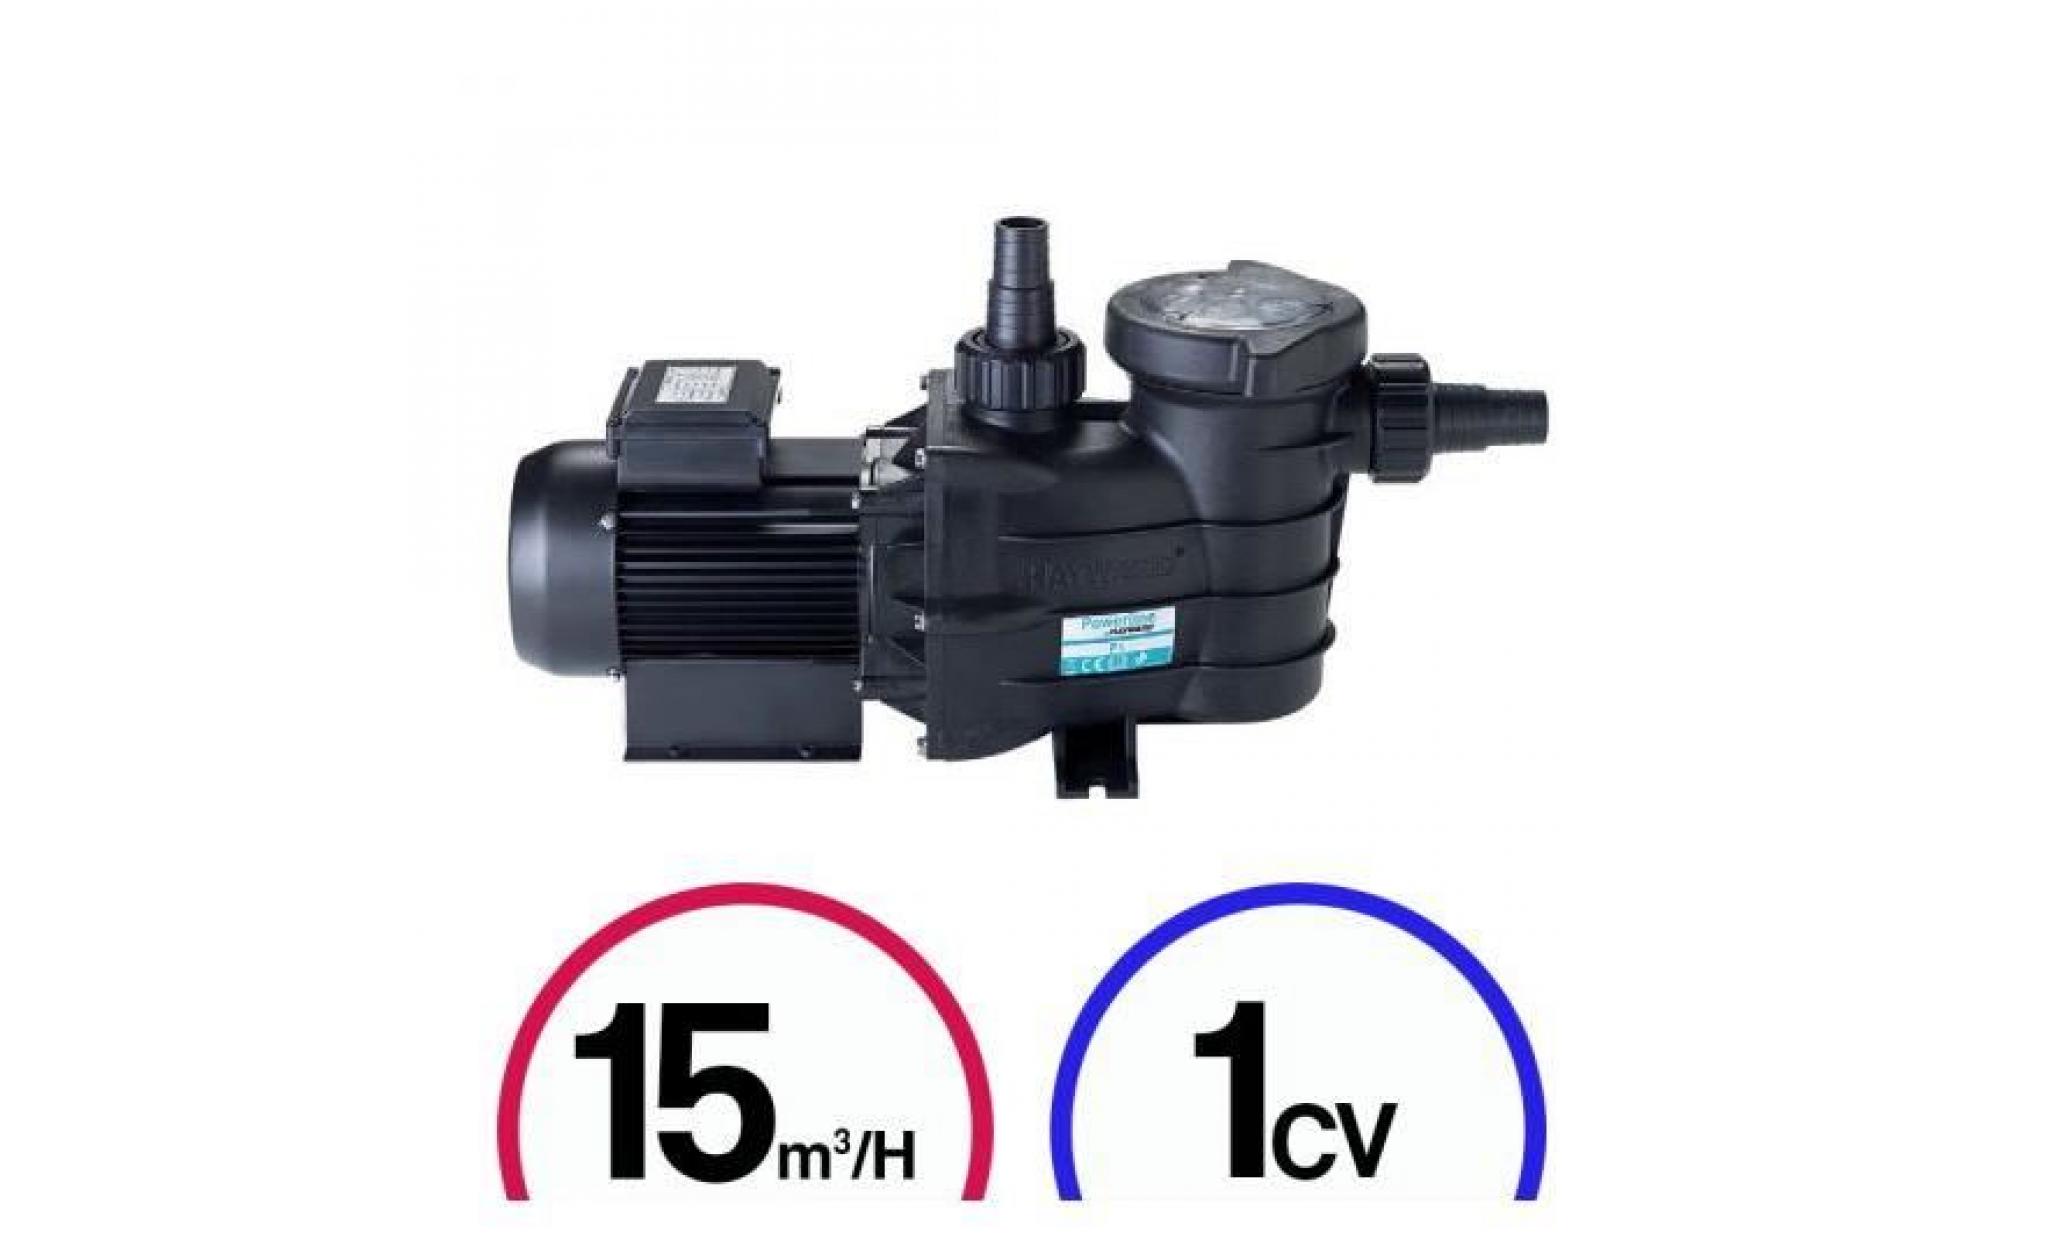 pompe filtration piscine   powerline 1cv mono 15m³/h   hayward